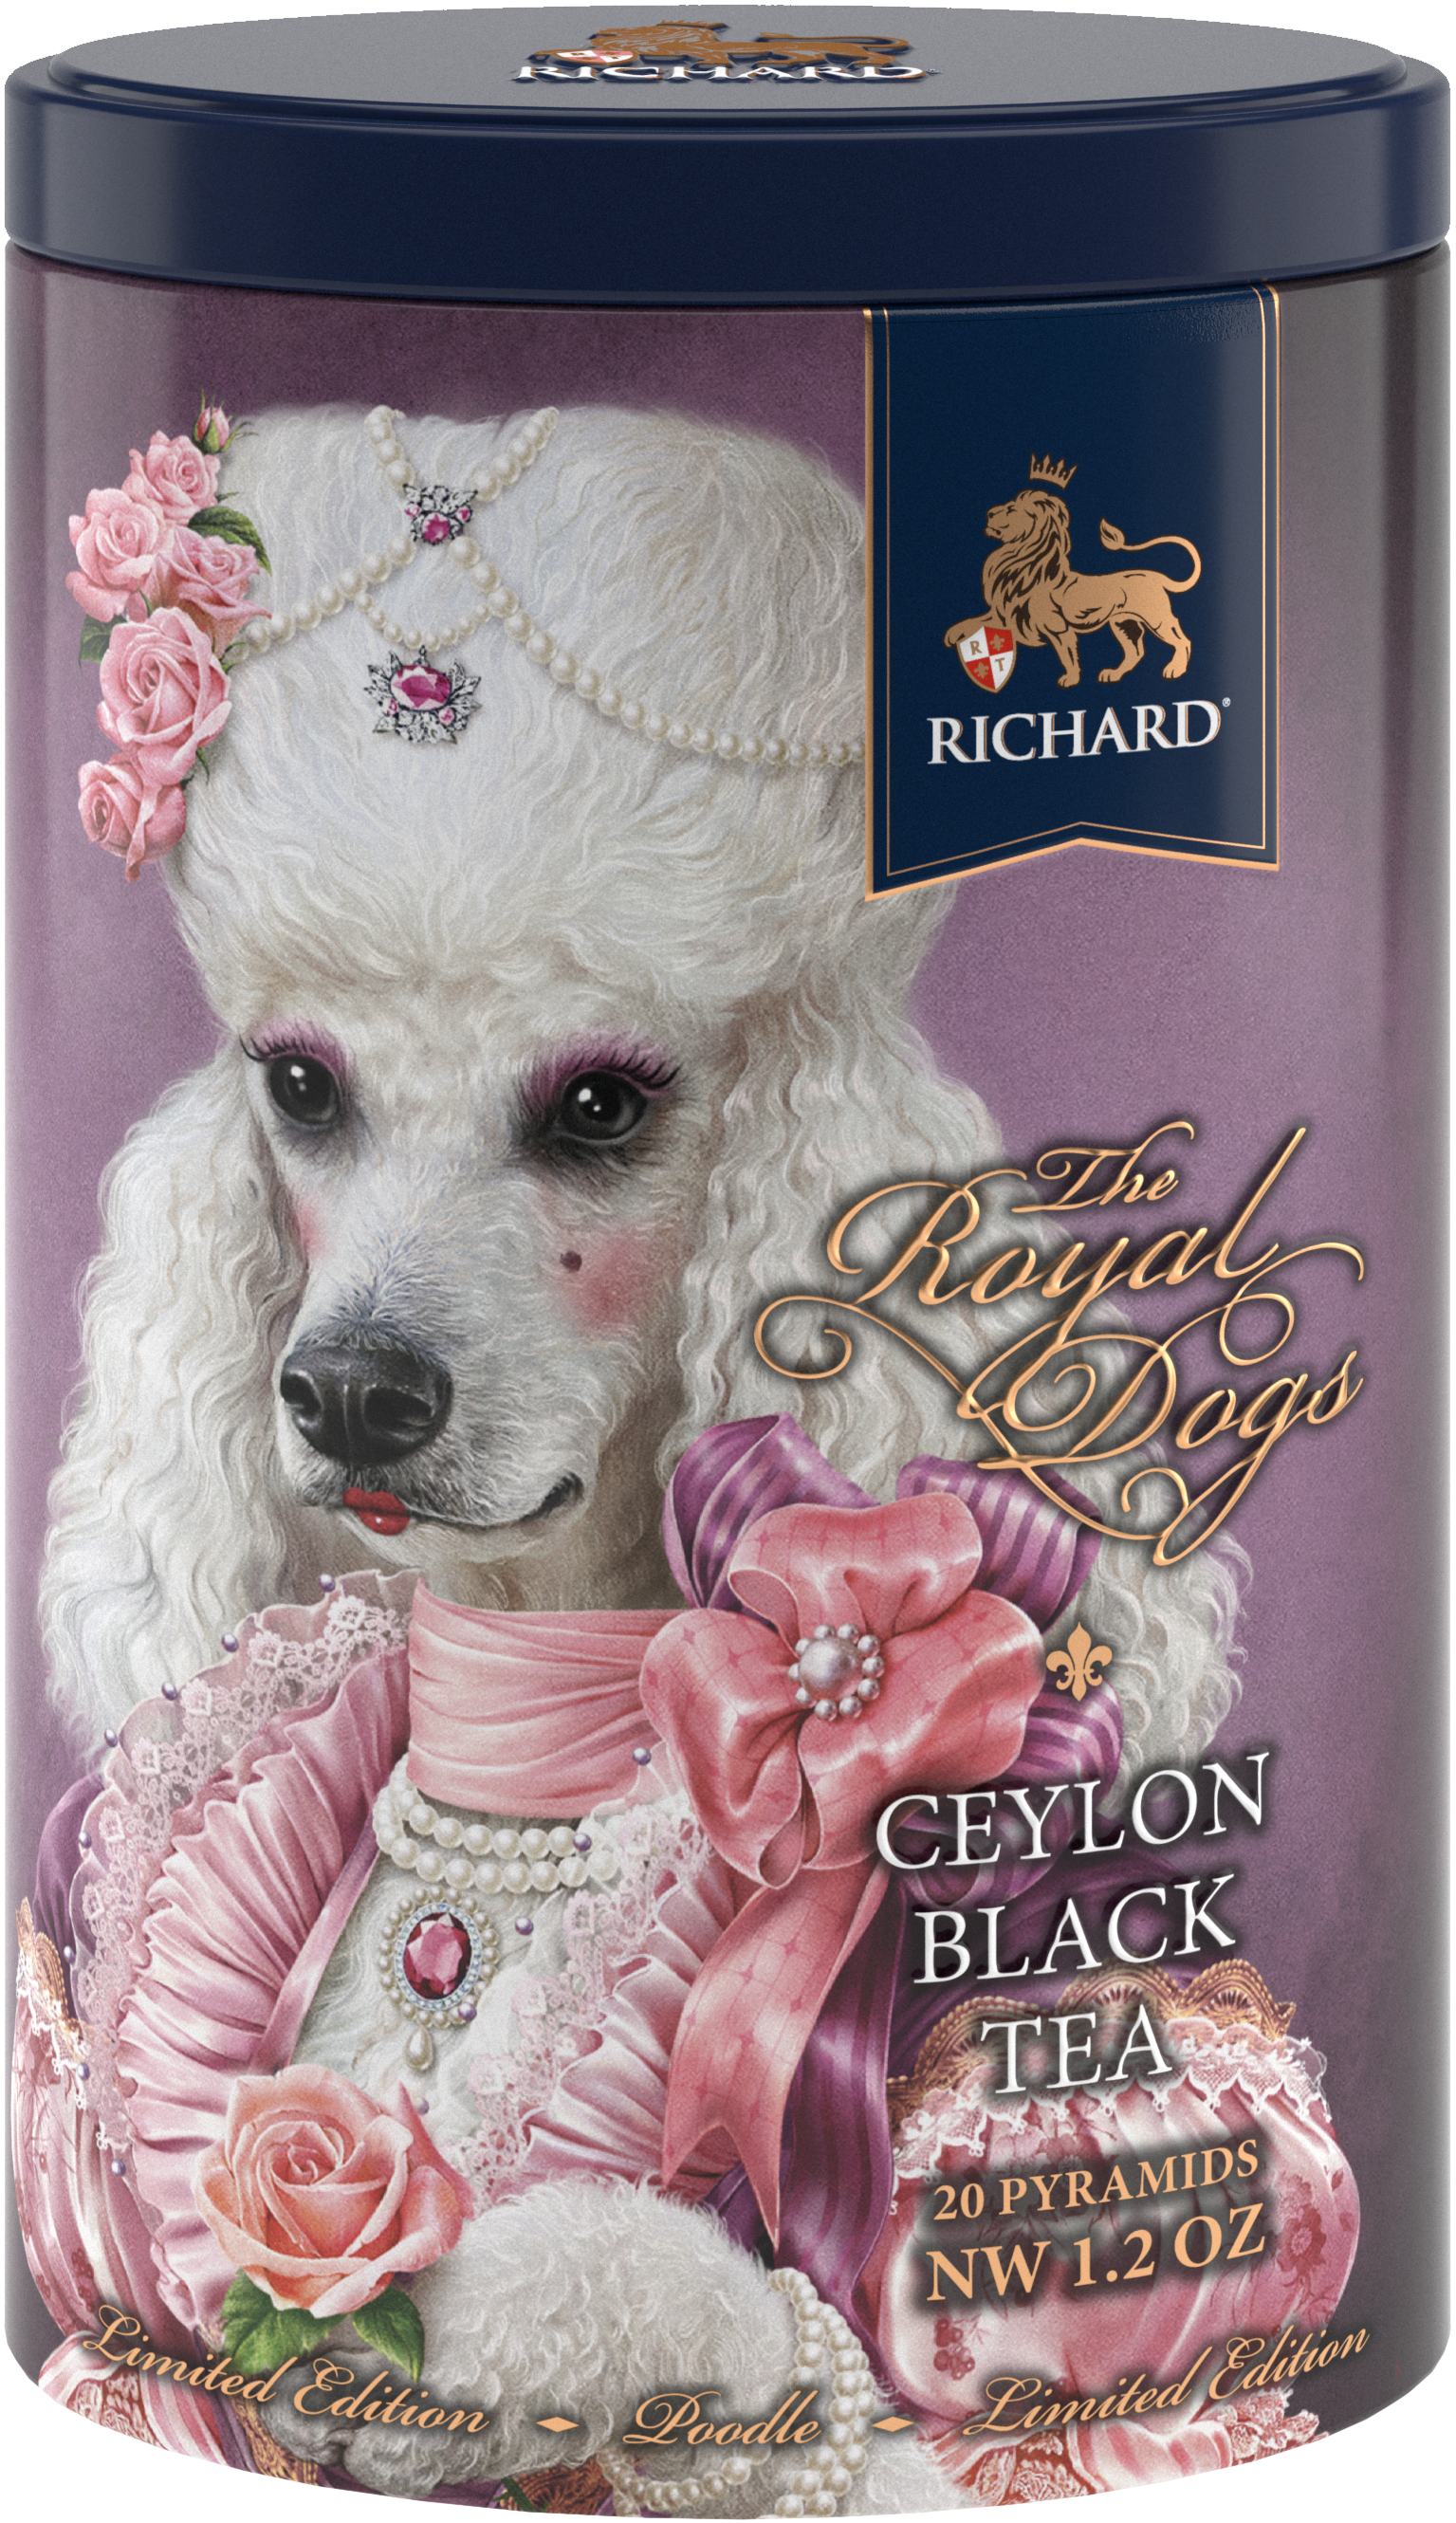 Richard Royal kutyák, fekete tea, 34g, 20 piramis-filter, Uszkár - RichardTeavn - vásároljon a 2990.00 Ft